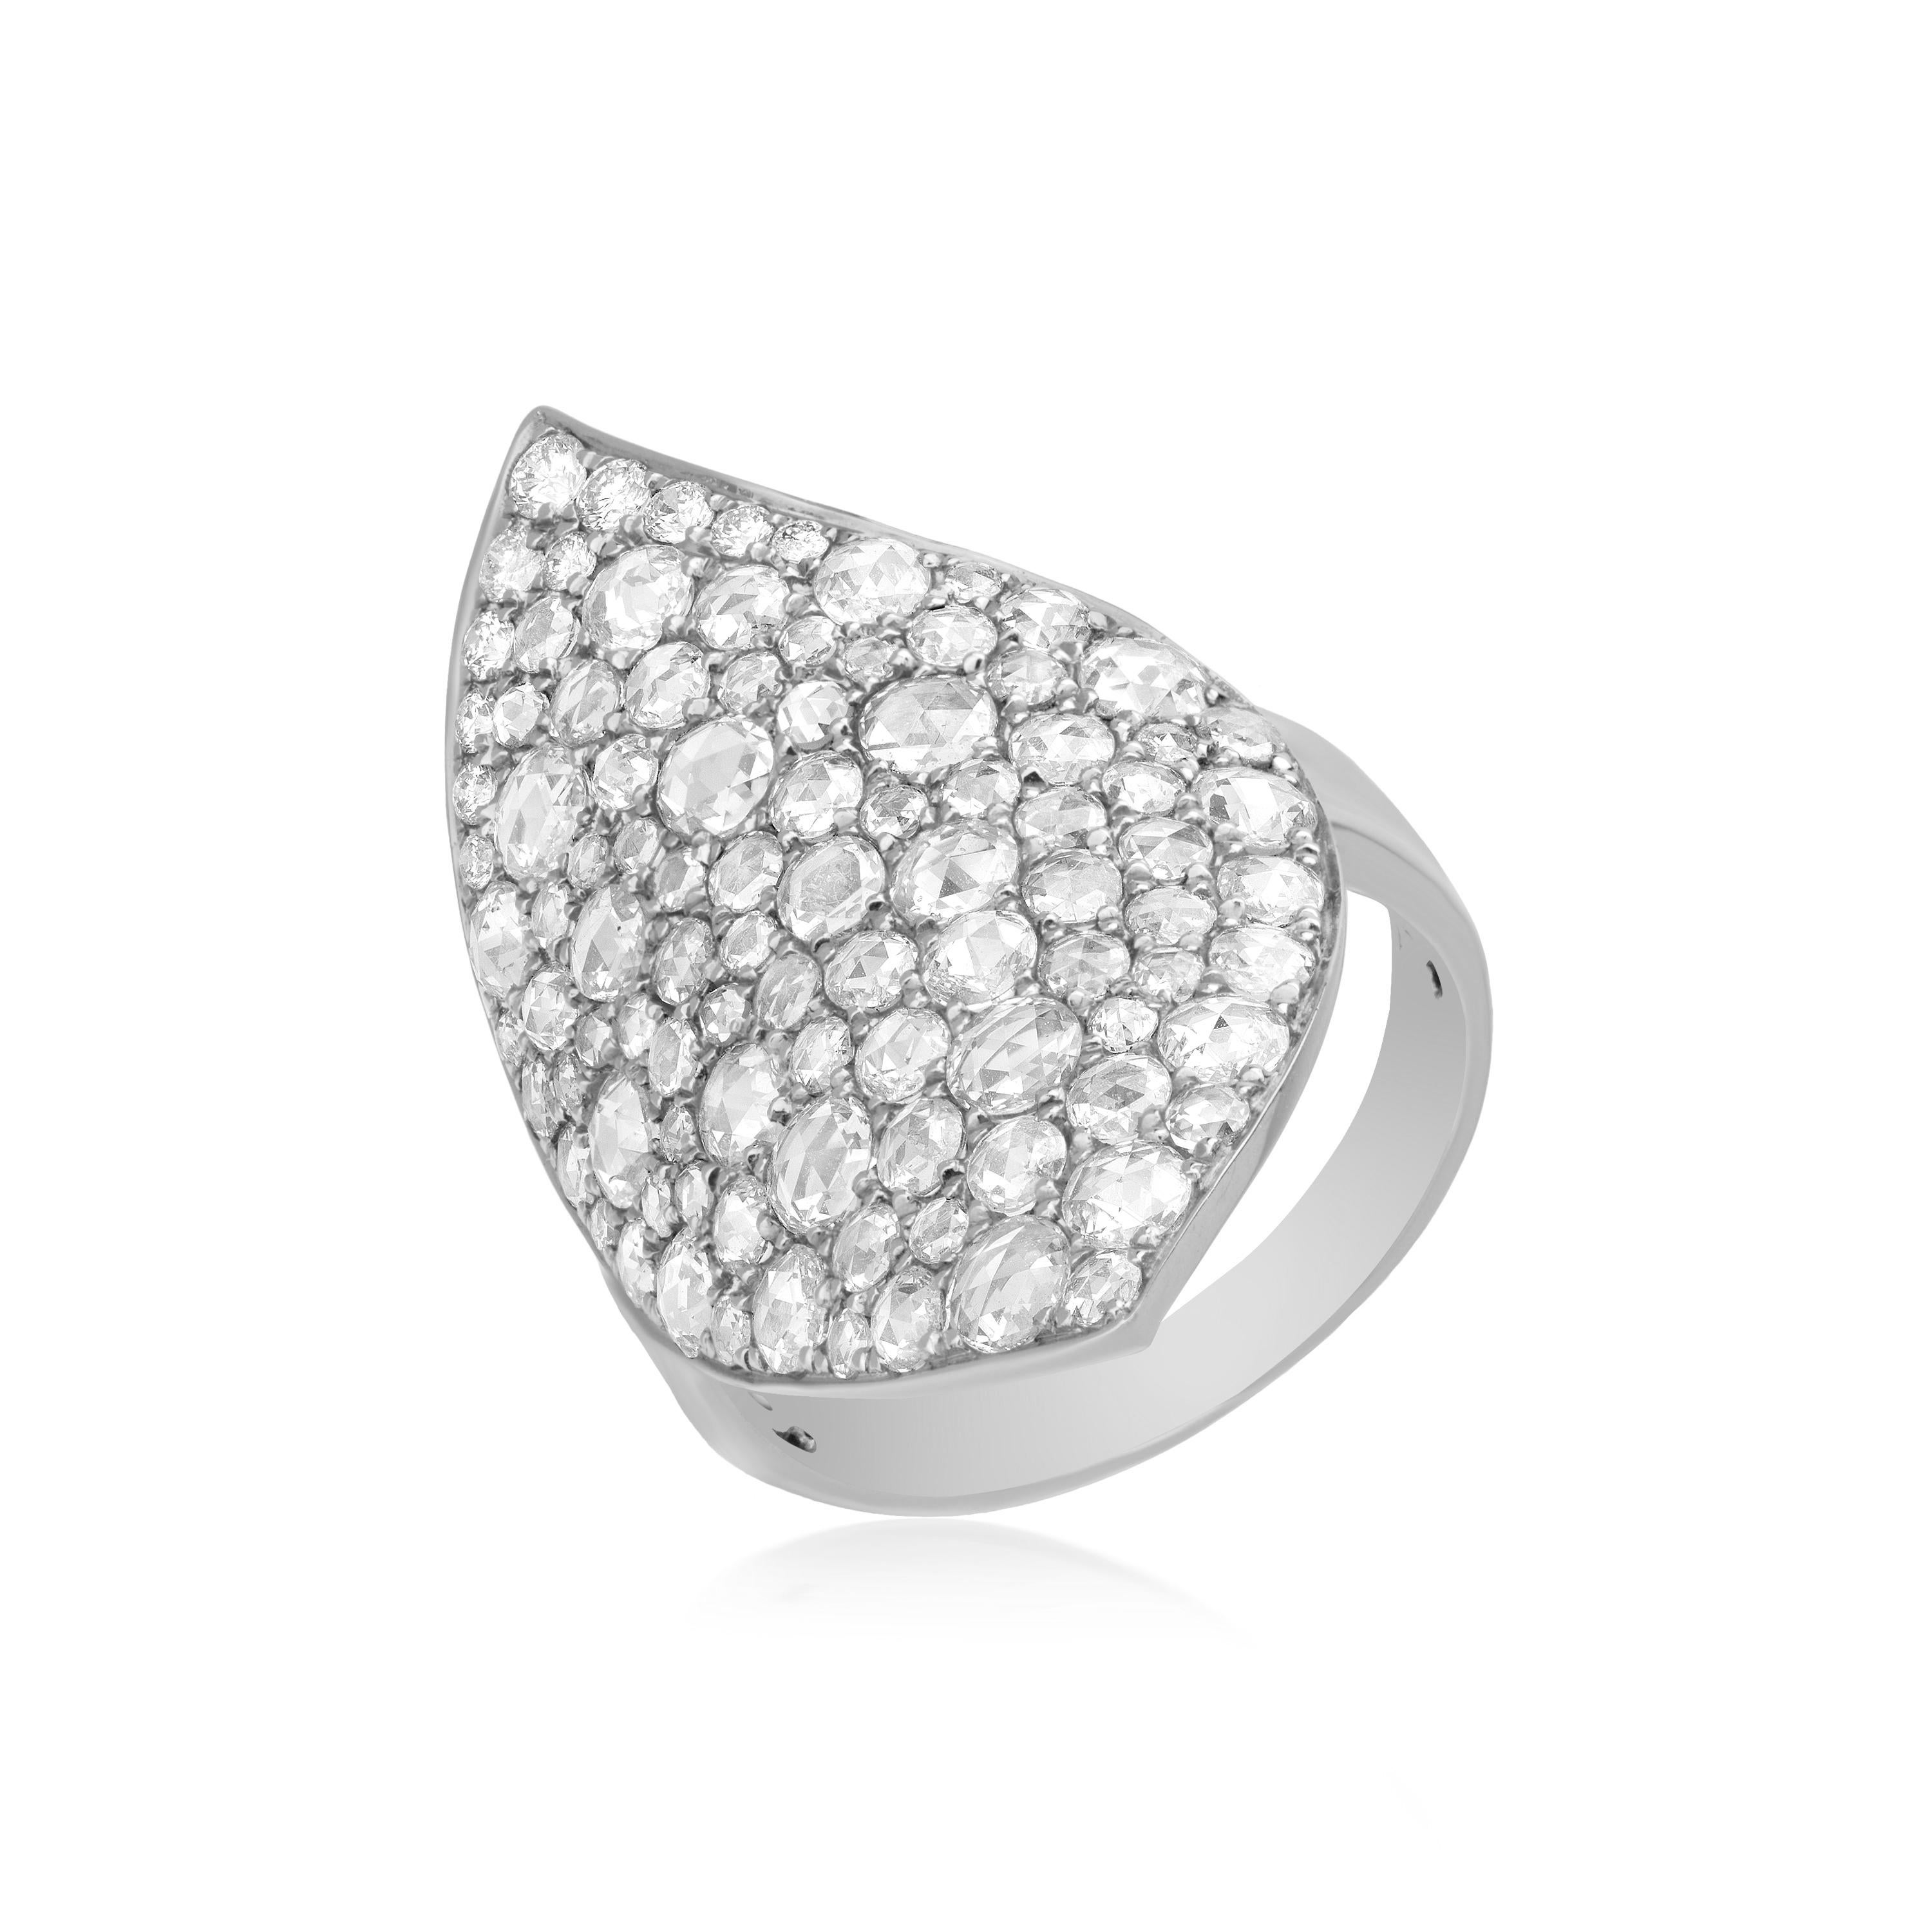 Setzen Sie ein atemberaubendes Zeichen mit dem Luxle 2,19 Cttw. Runder Diamant-Blatt-Cluster-Ring im Rosenschliff aus 18 Karat Weißgold. Dieser Ring ist ein wahres Meisterwerk, das die Schönheit der Diamanten in einem einzigartigen und auffälligen